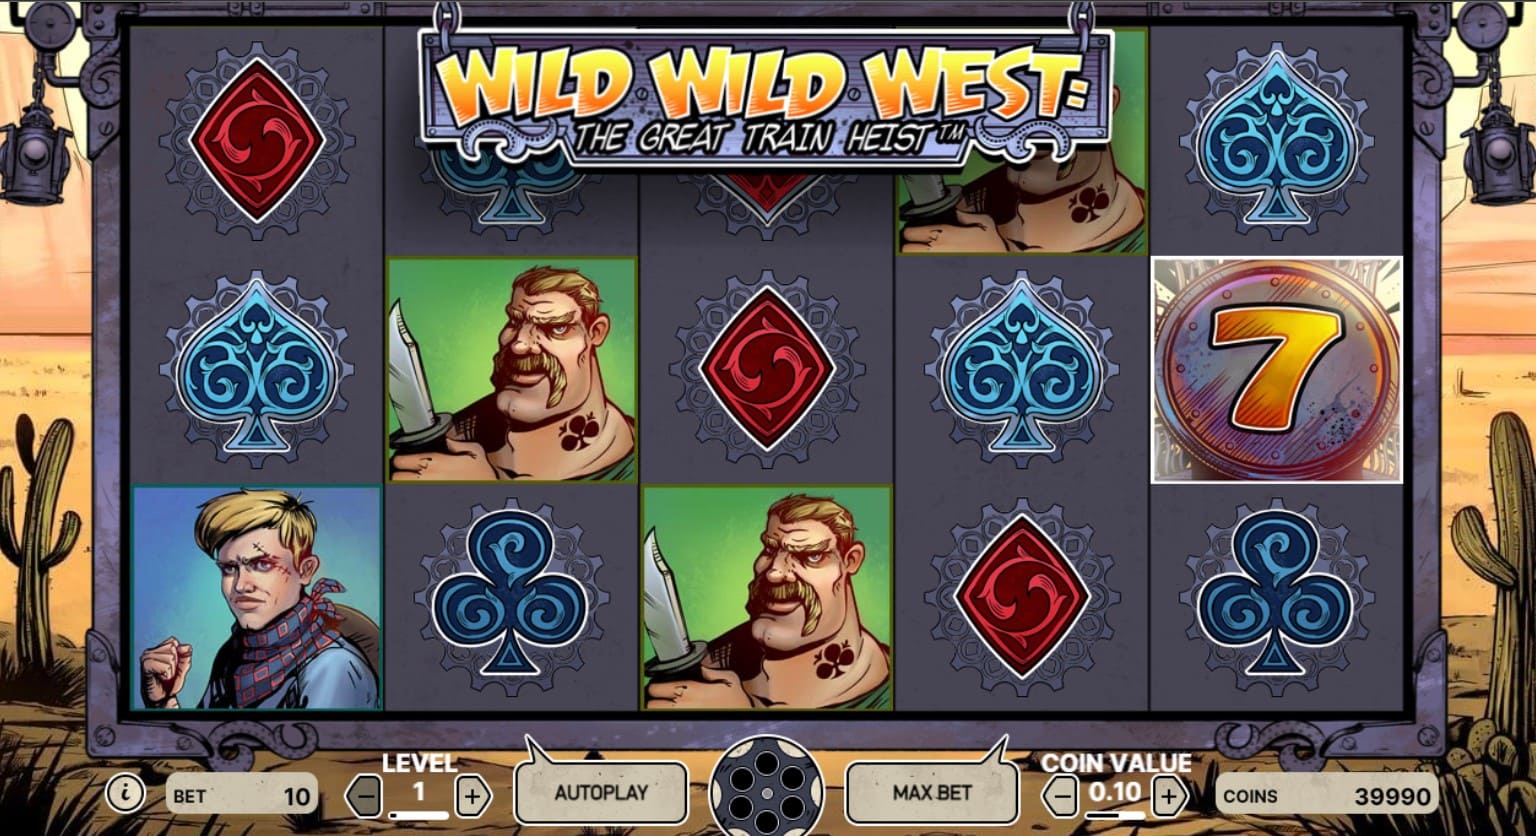 Wild Wild West Slot online